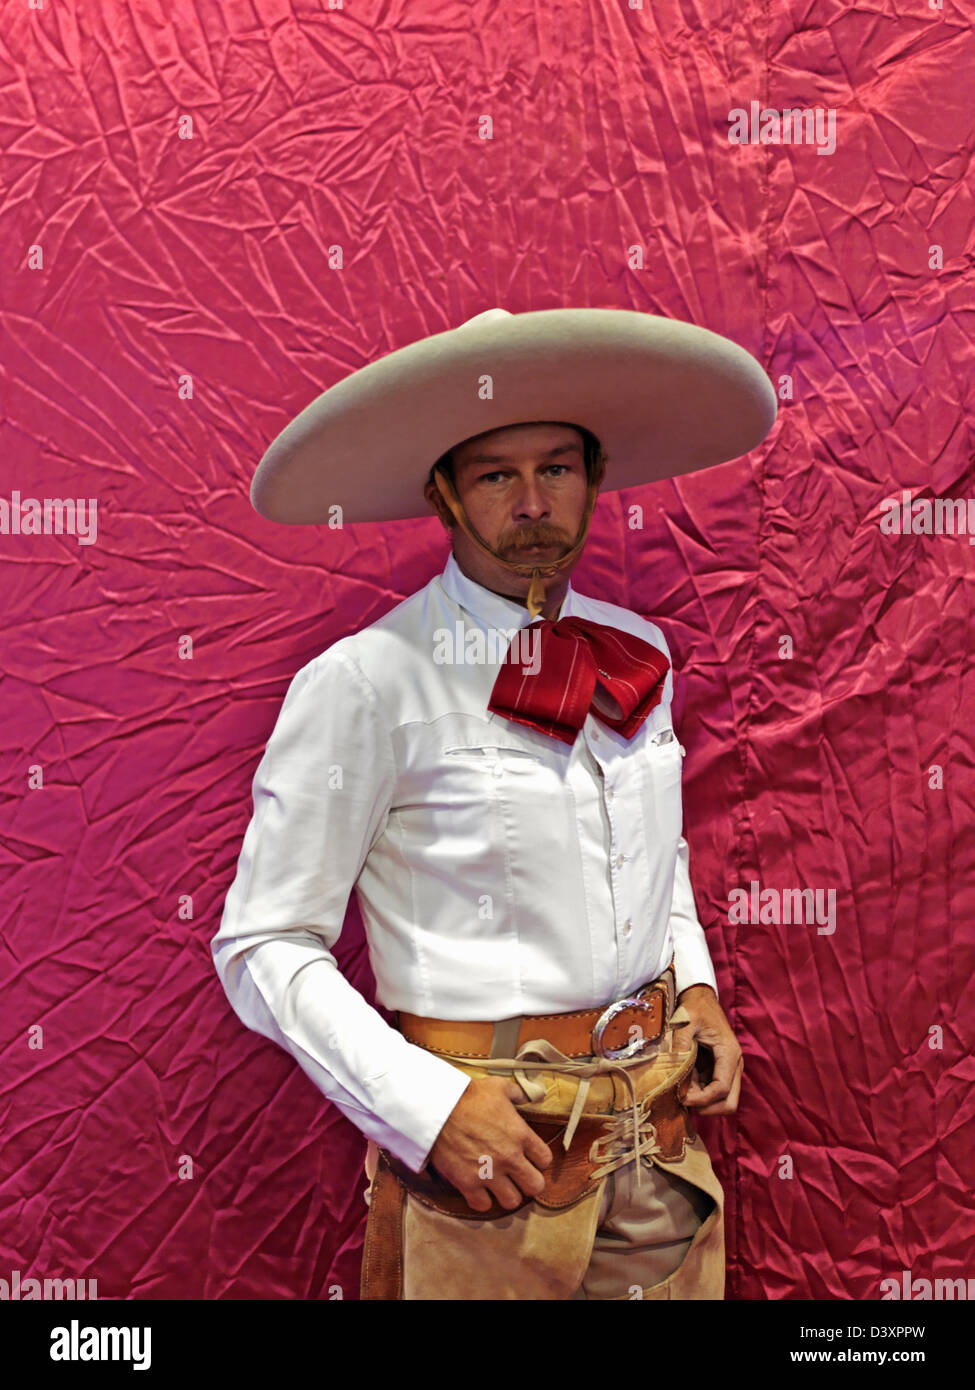 Messico,,Jalisco Guadalajara, ritratto del messicano charro (cowboy) Foto Stock